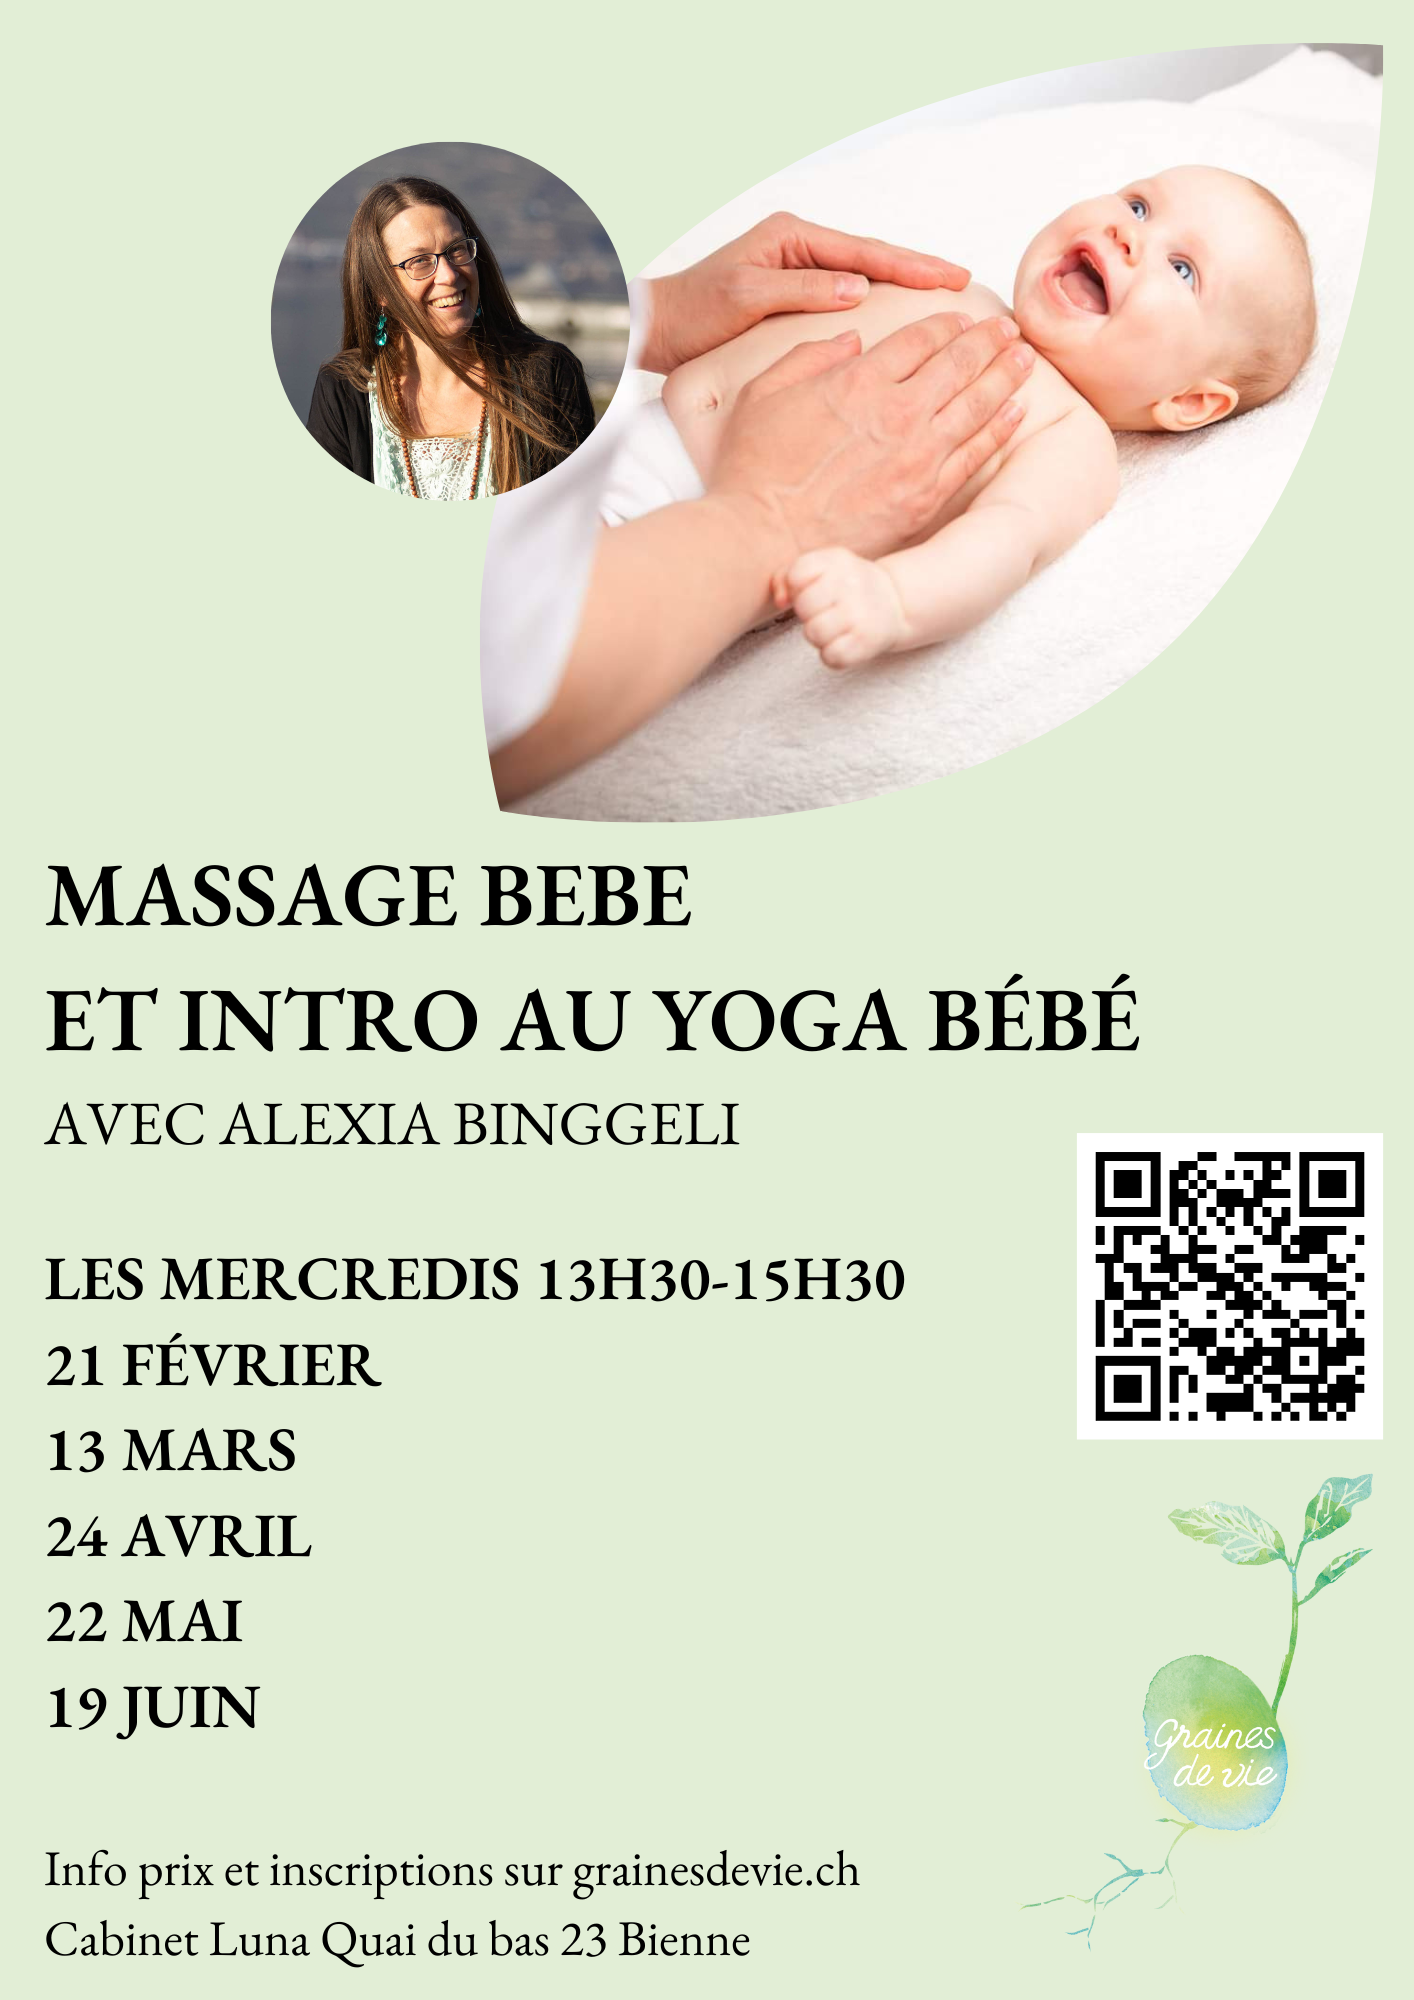 Massage bébé et introduction au yoga bébé